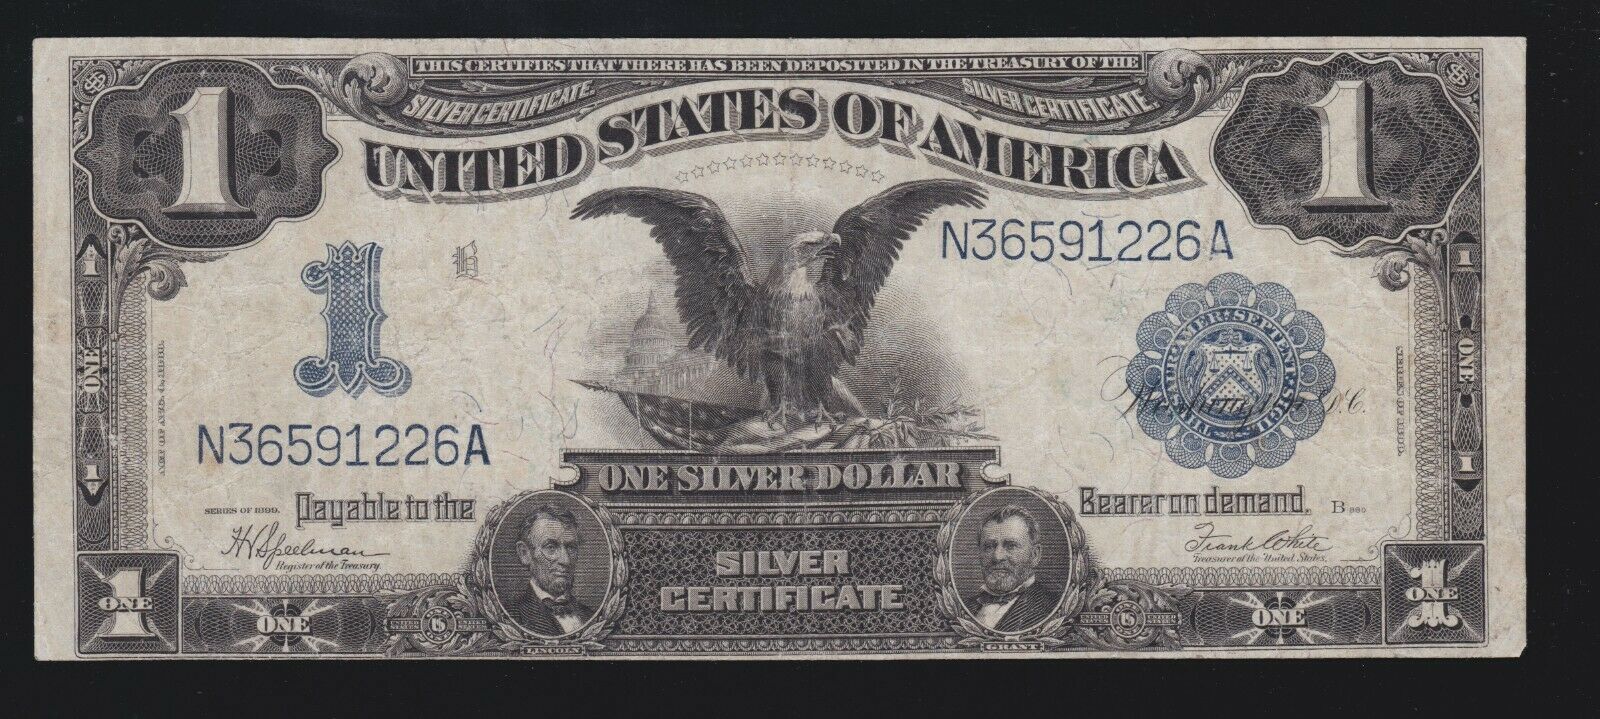 US 1891 $1 Black Eagle Silver Certificate FR 236 VF (226)